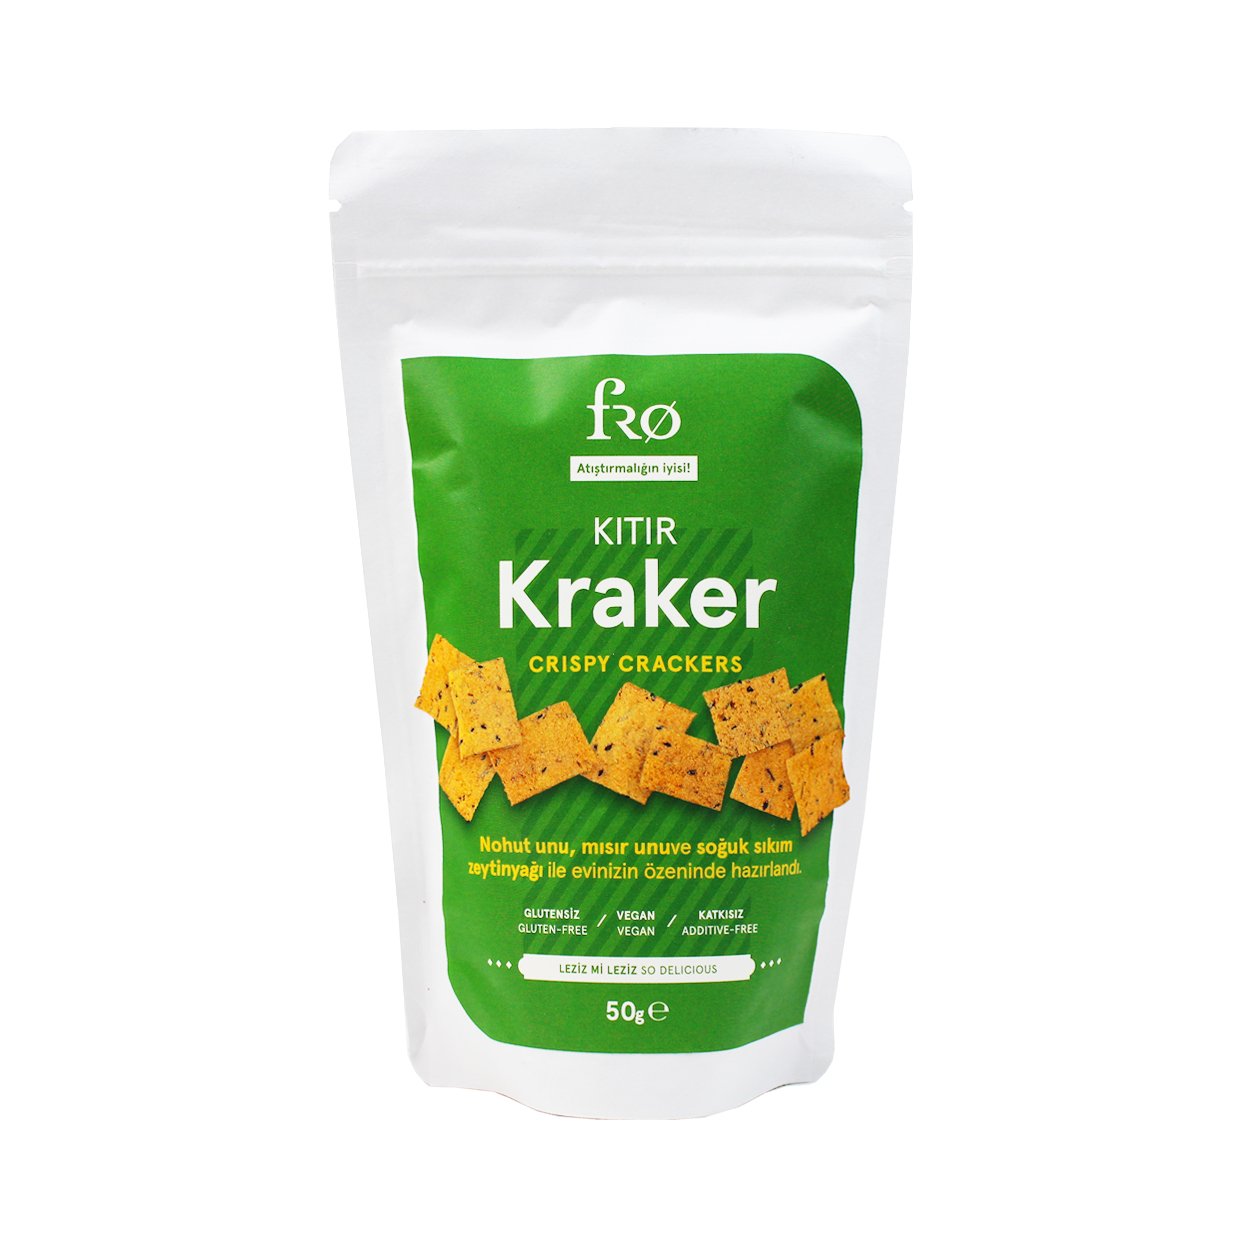 108948-fro-citir-kraker